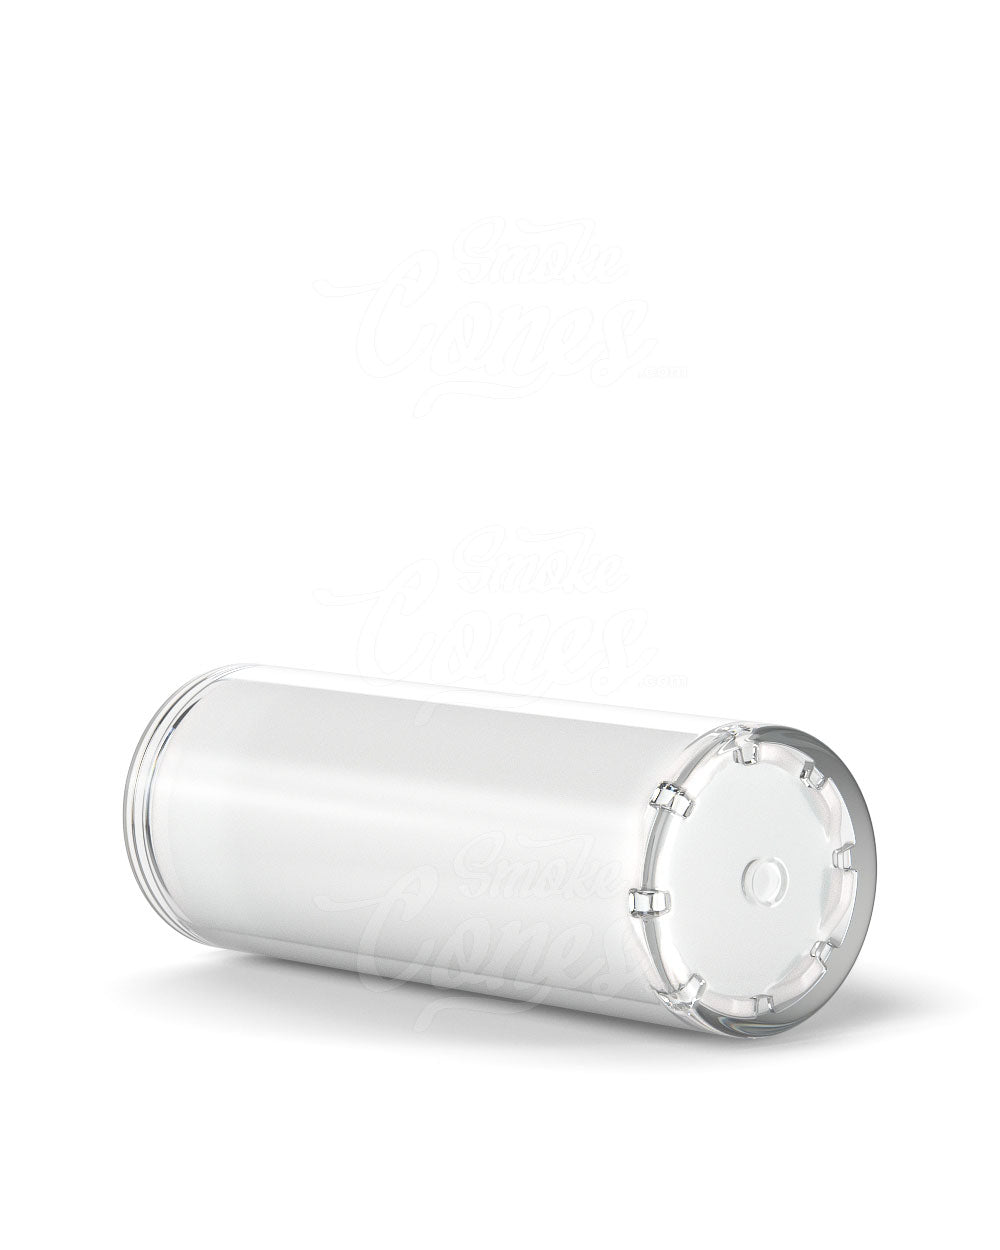 Child Resistant Vape Cartridge Tube W/ White Insert 100/Box - 8